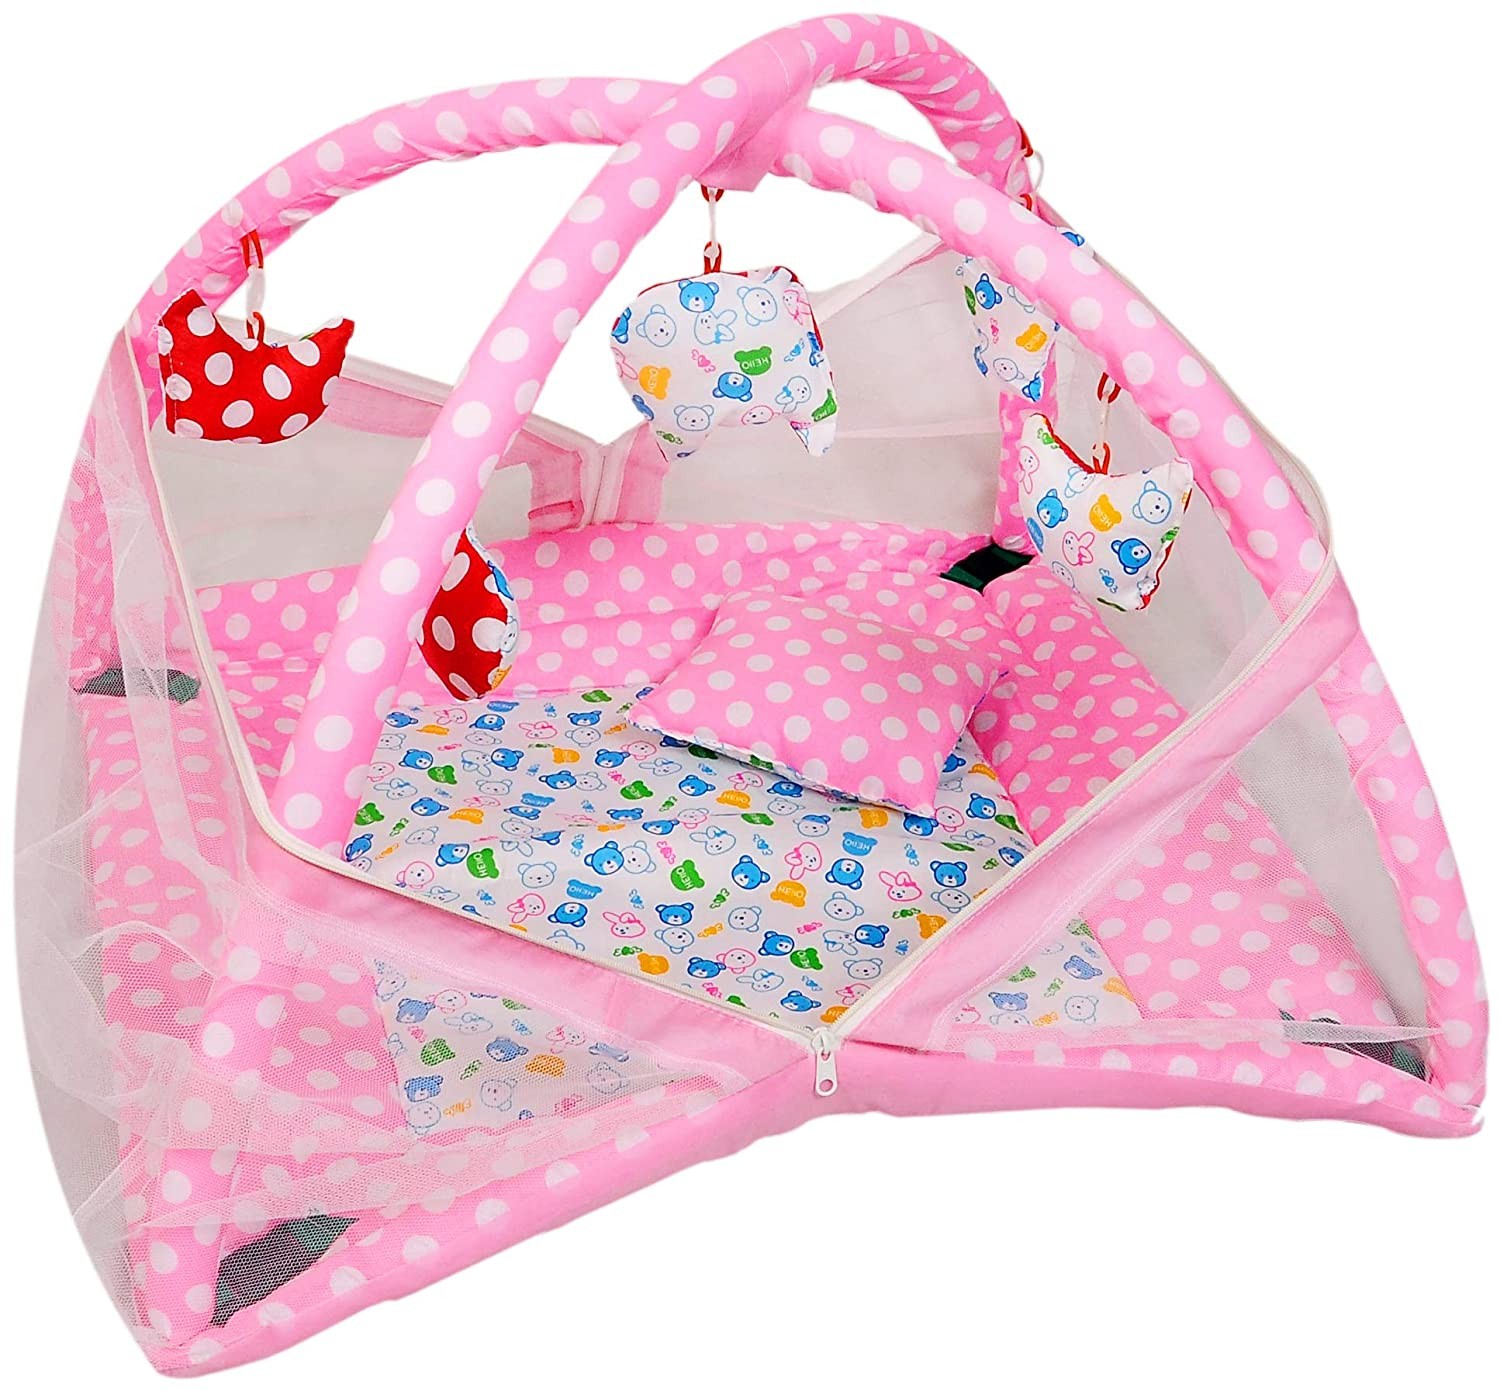 pink Baby Bedding Set